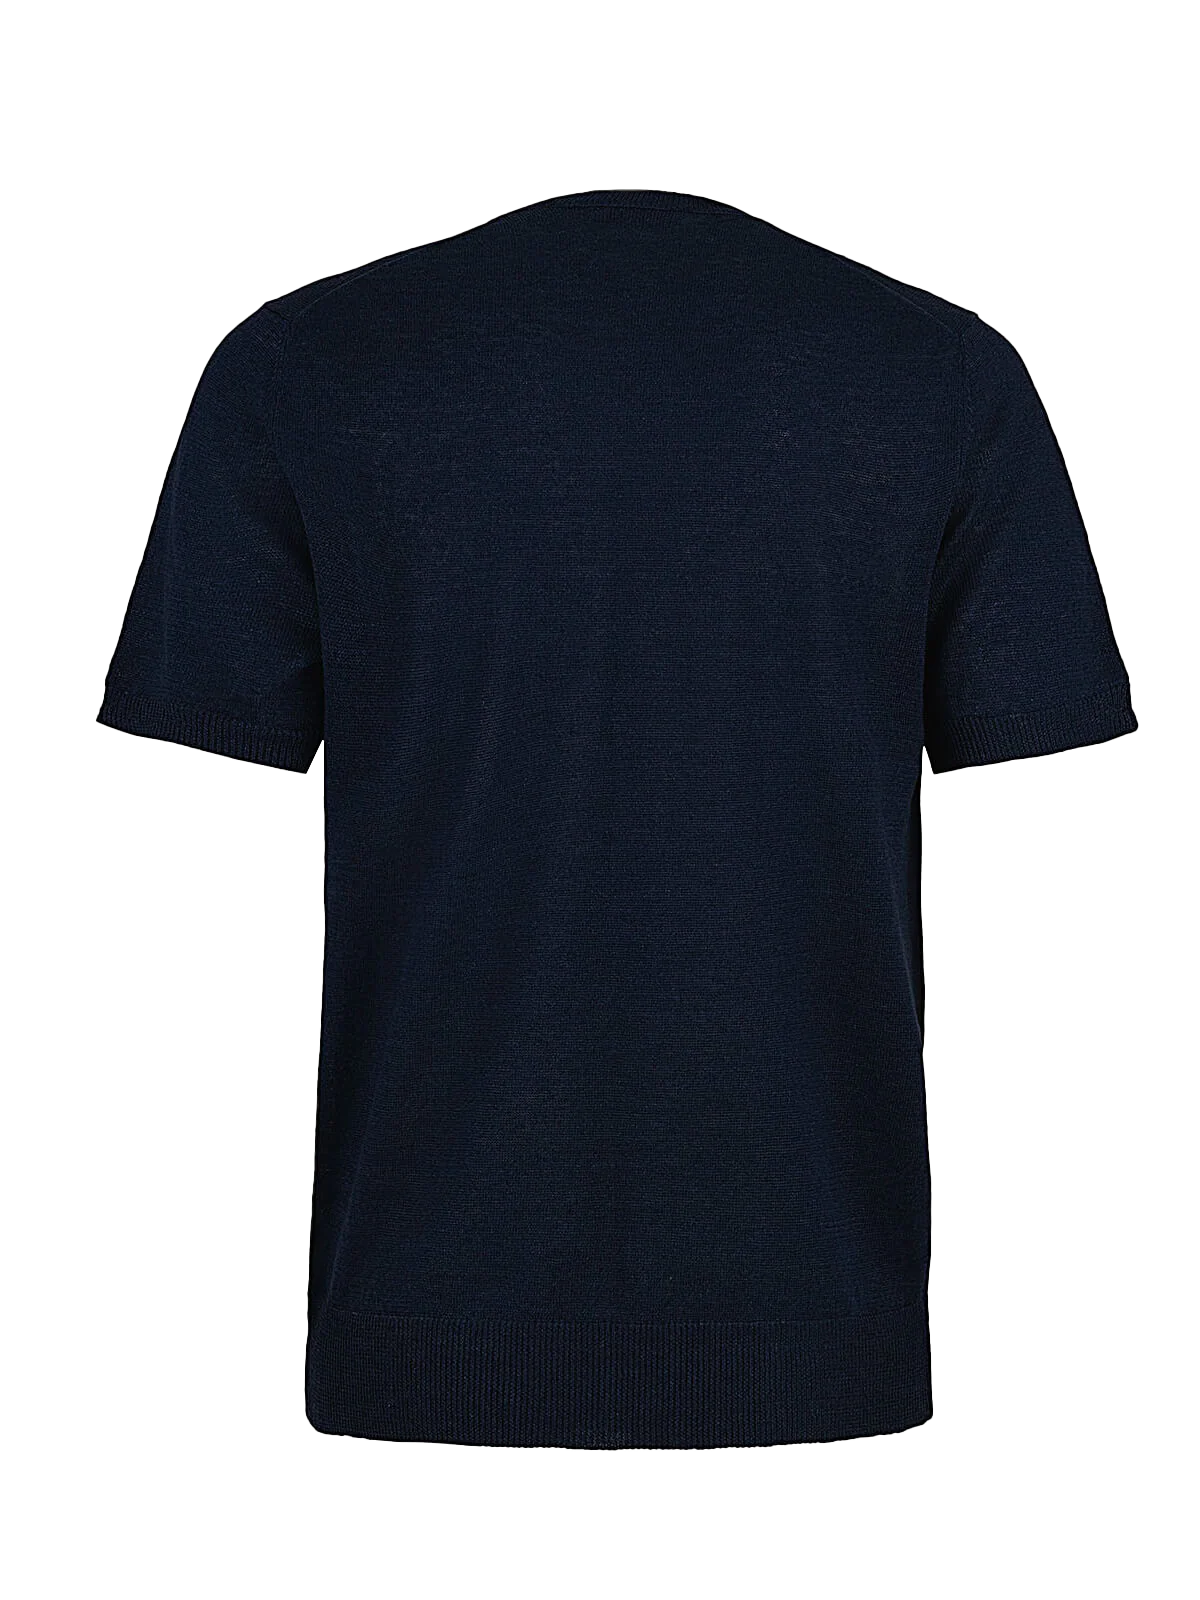 T-Shirt M/C 100% Capri blue linen t-shirt back